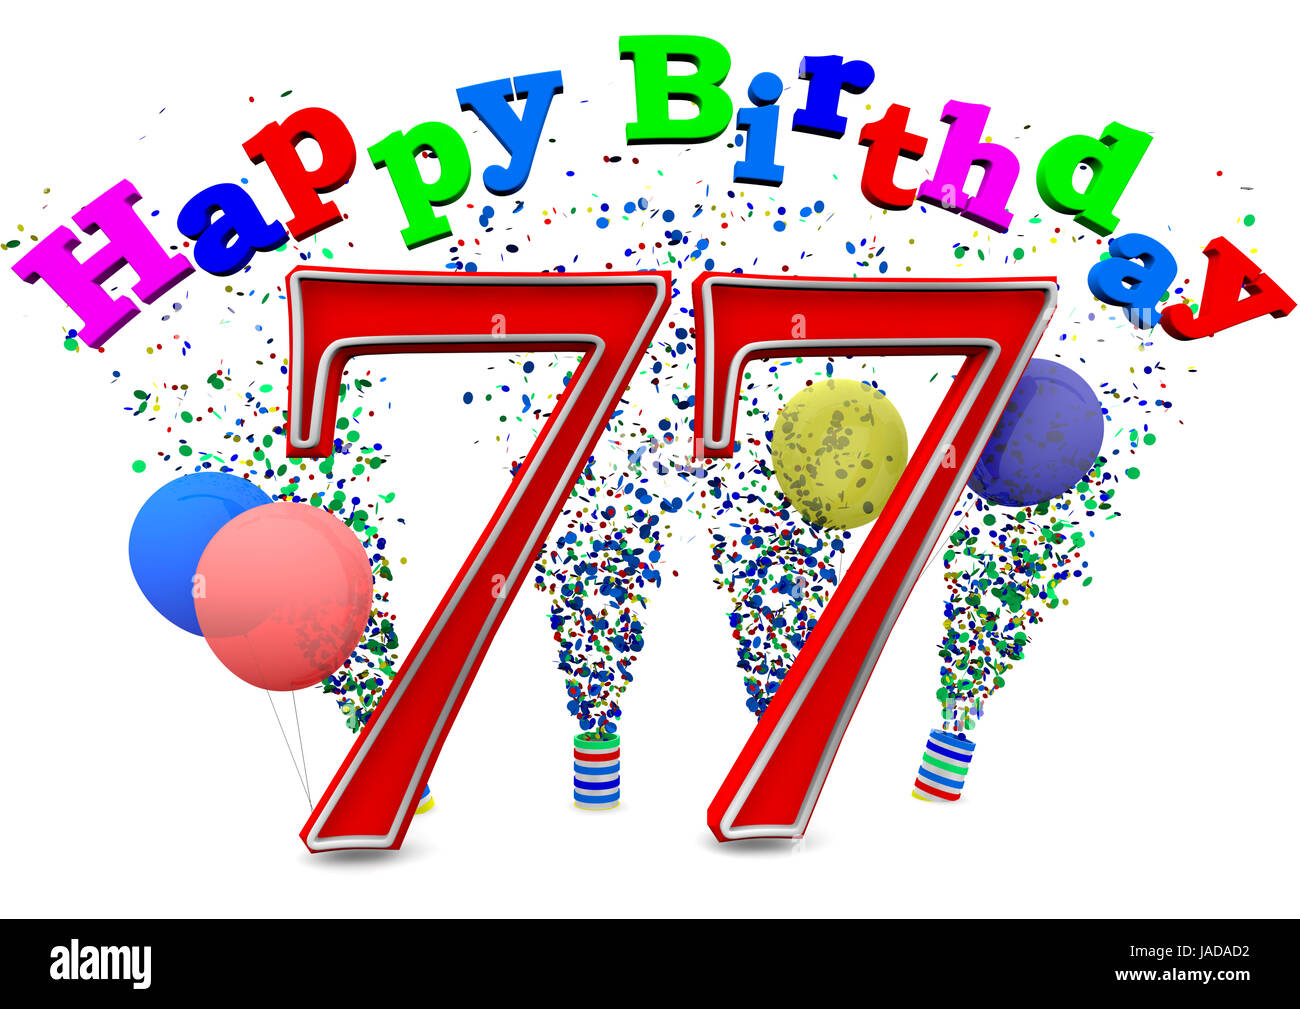 77 compleanno immagini e fotografie stock ad alta risoluzione - Alamy